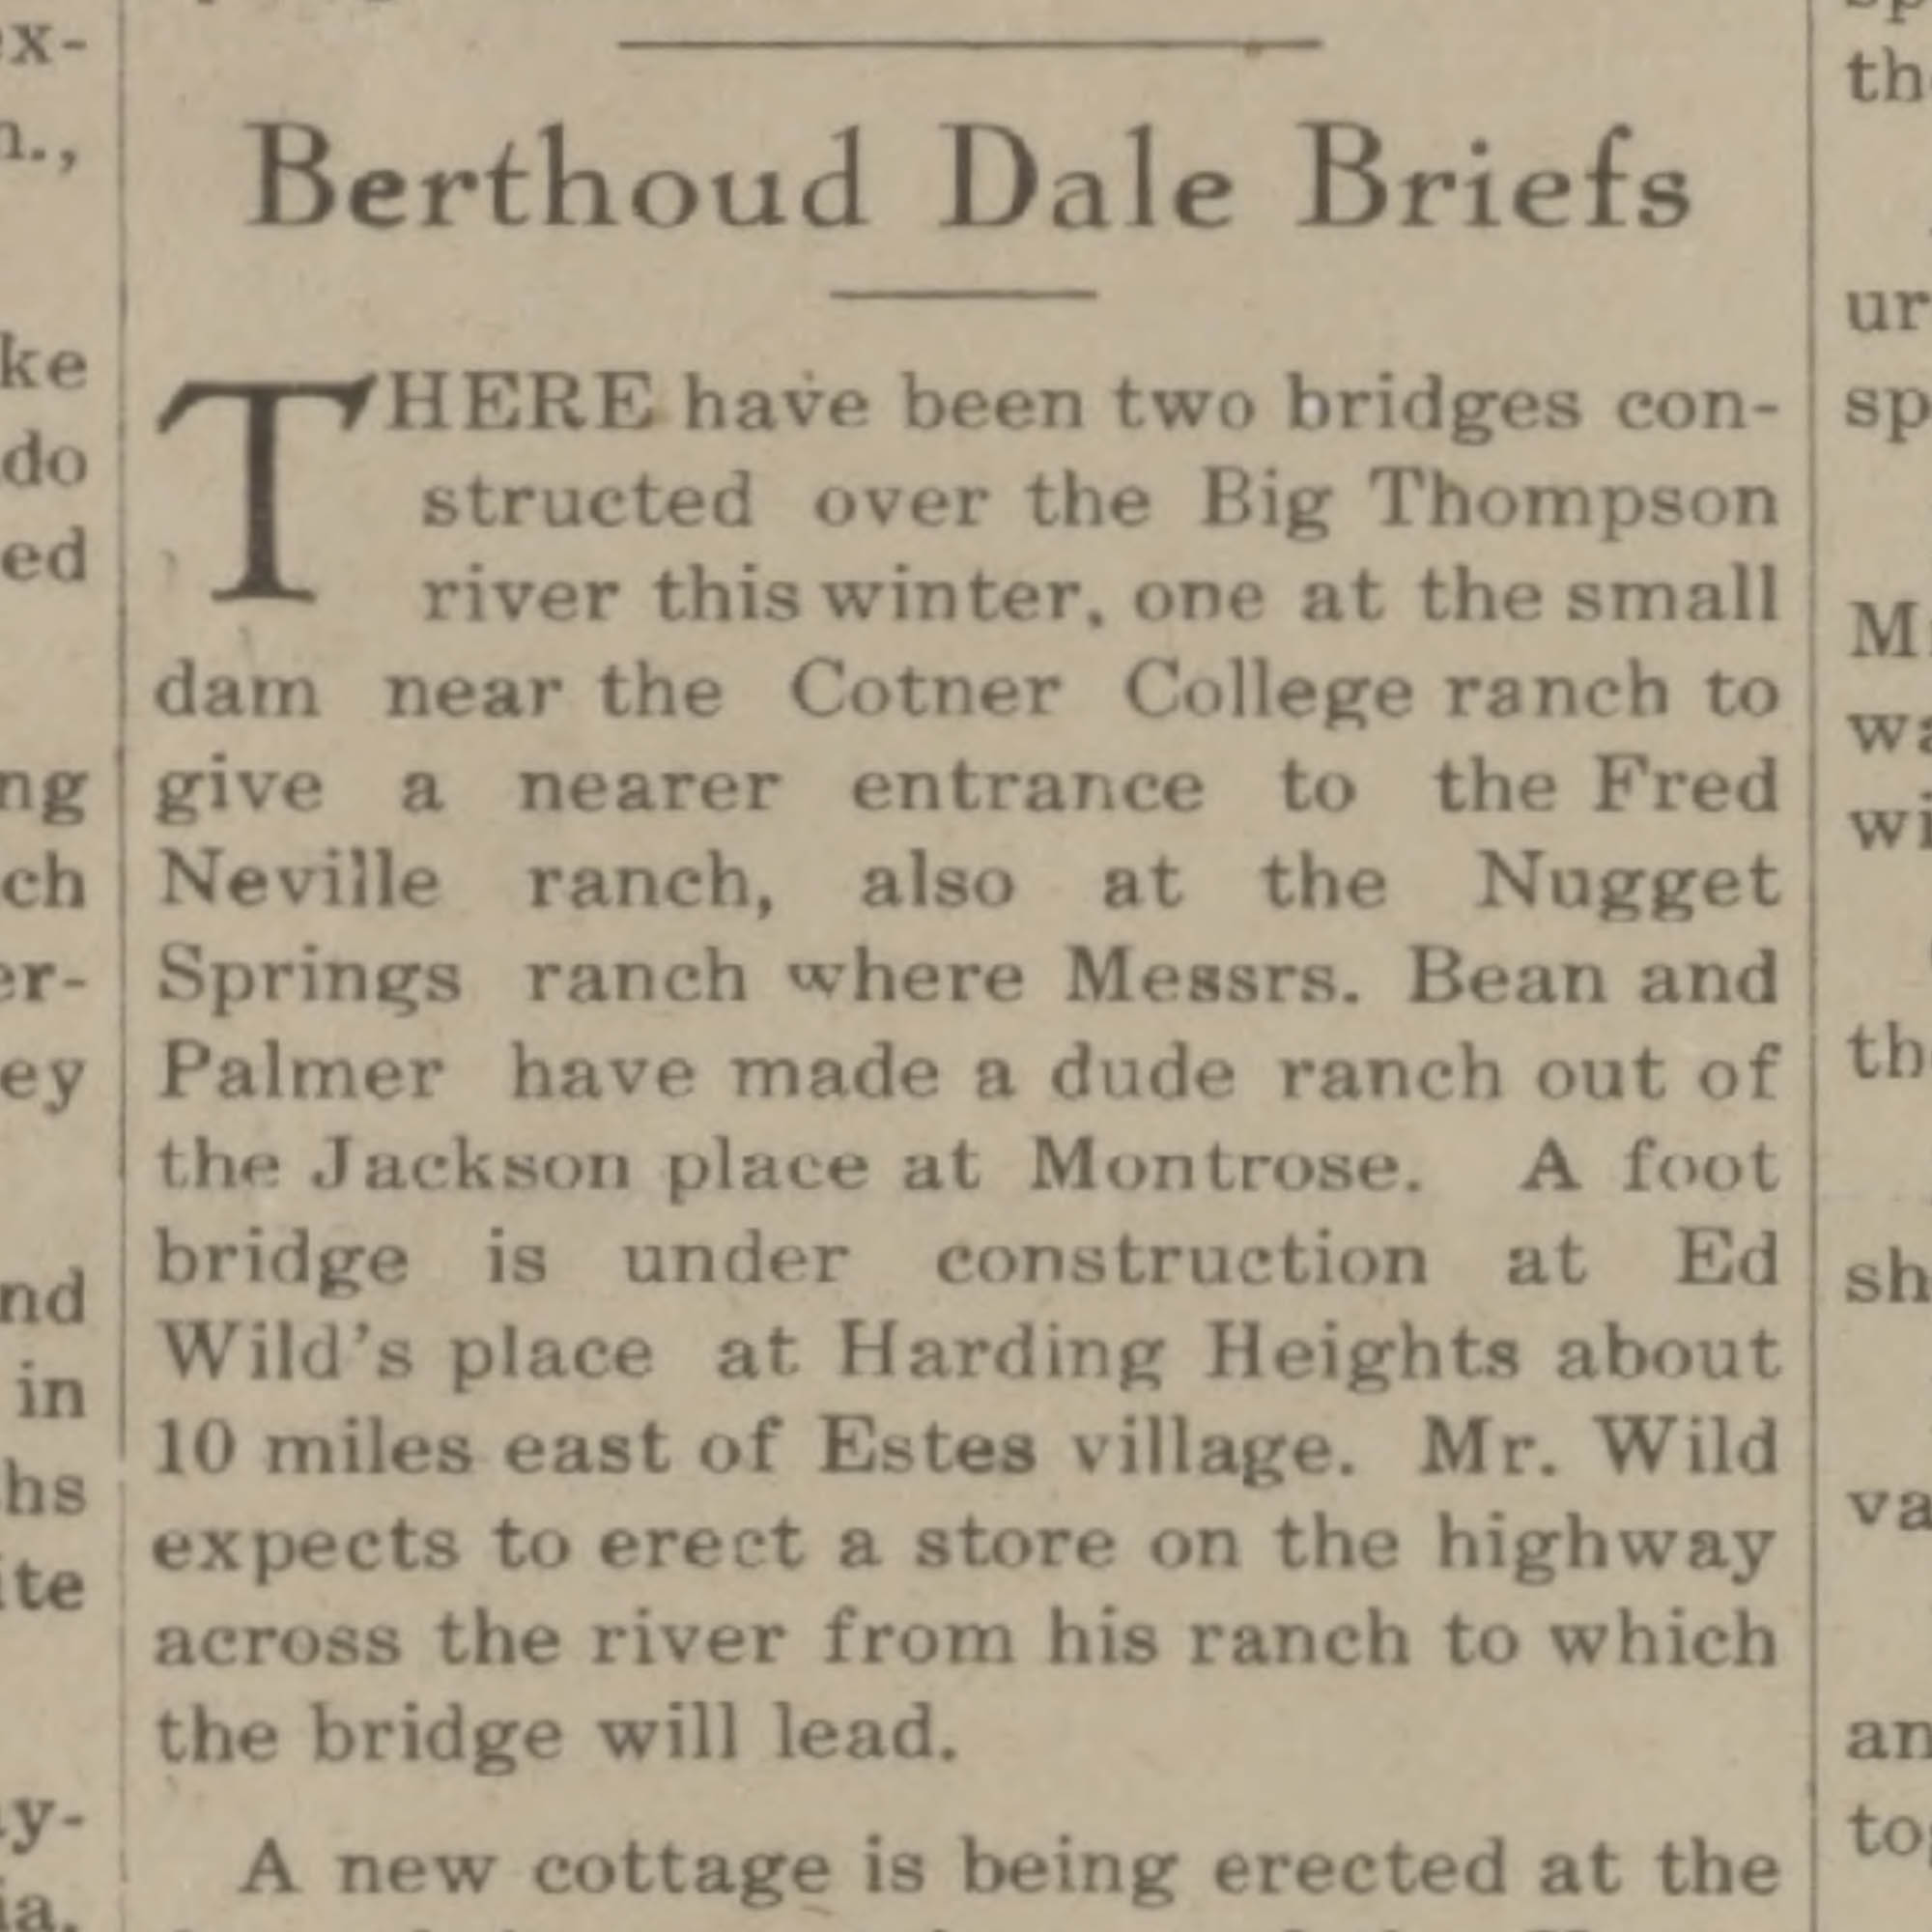 Idlewild Lodge - idlewildlodge.github.io - 1931-04-03 - The Estes Park Trail - Footbridge built at Ed Wilds Harding Heights